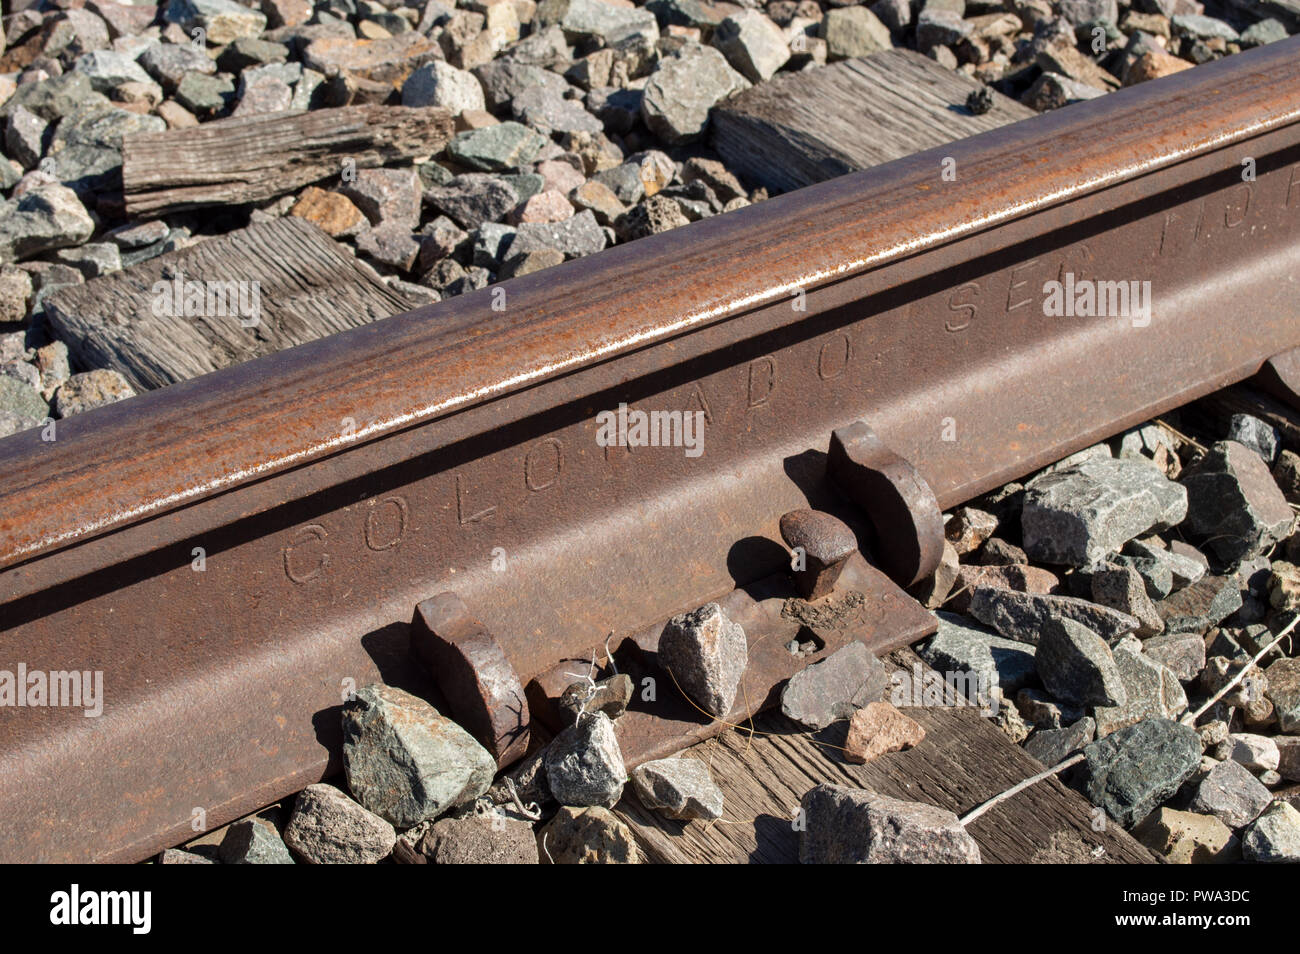 Colorado Railroad Rail mit den Worten "Colorado" eingeprägt. Aktiv genutzt, Anschluss, der sich durch Castle Rock Colorado meist Kohle trägt. Stockfoto